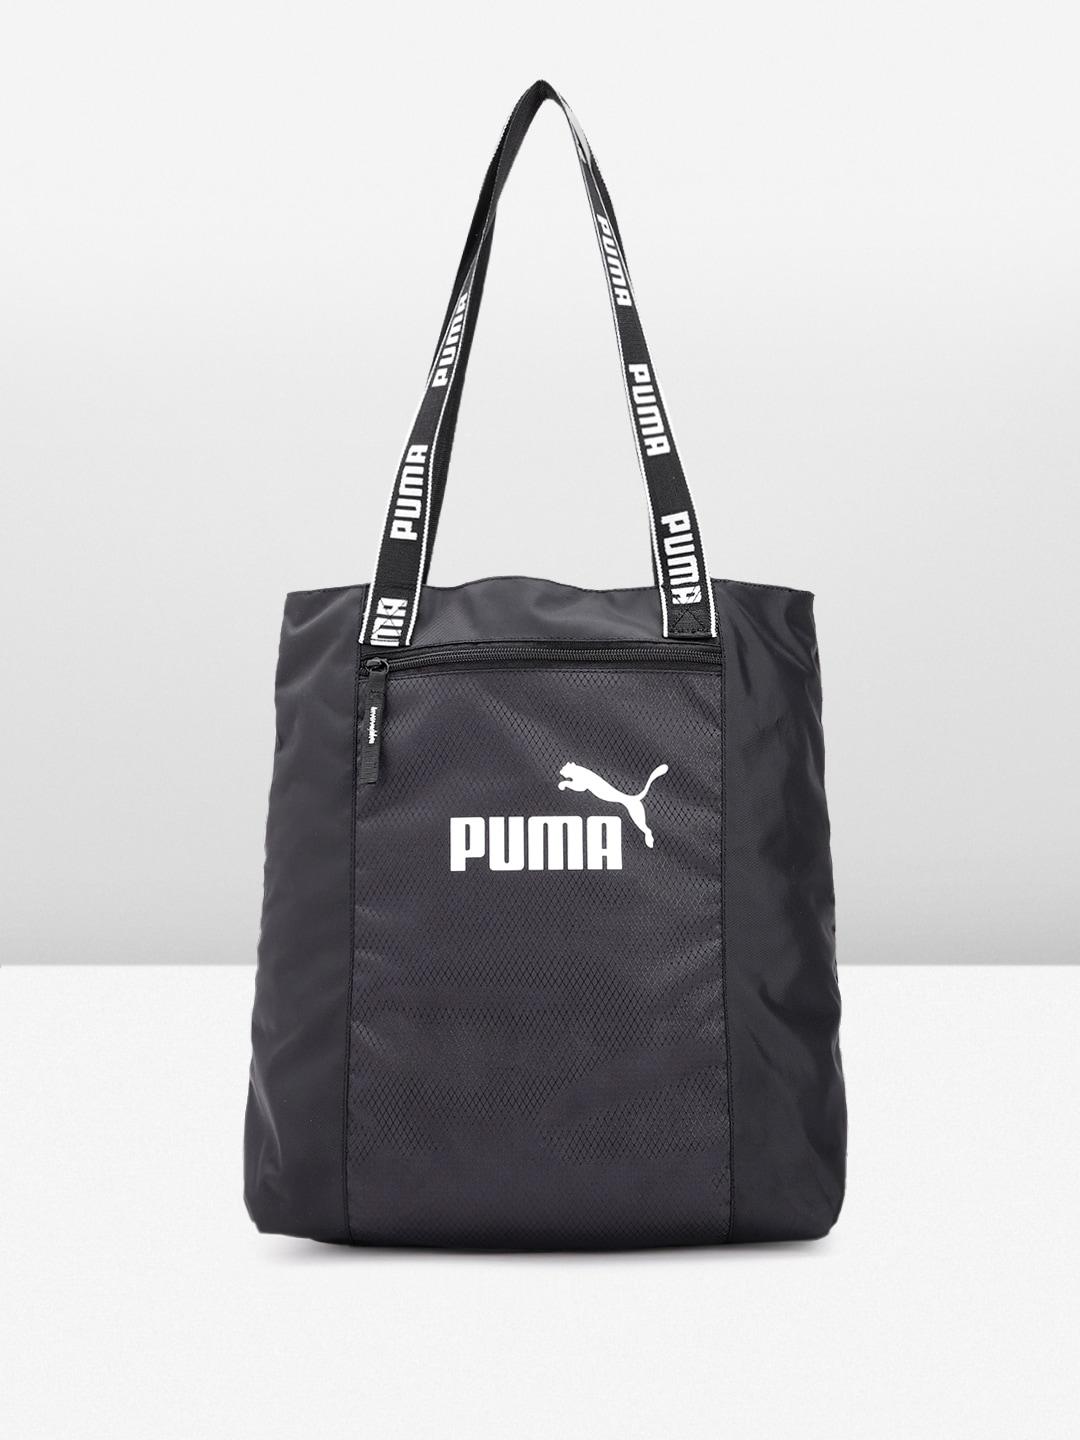 Puma Brand Logo Printed Structured Shoulder Bag